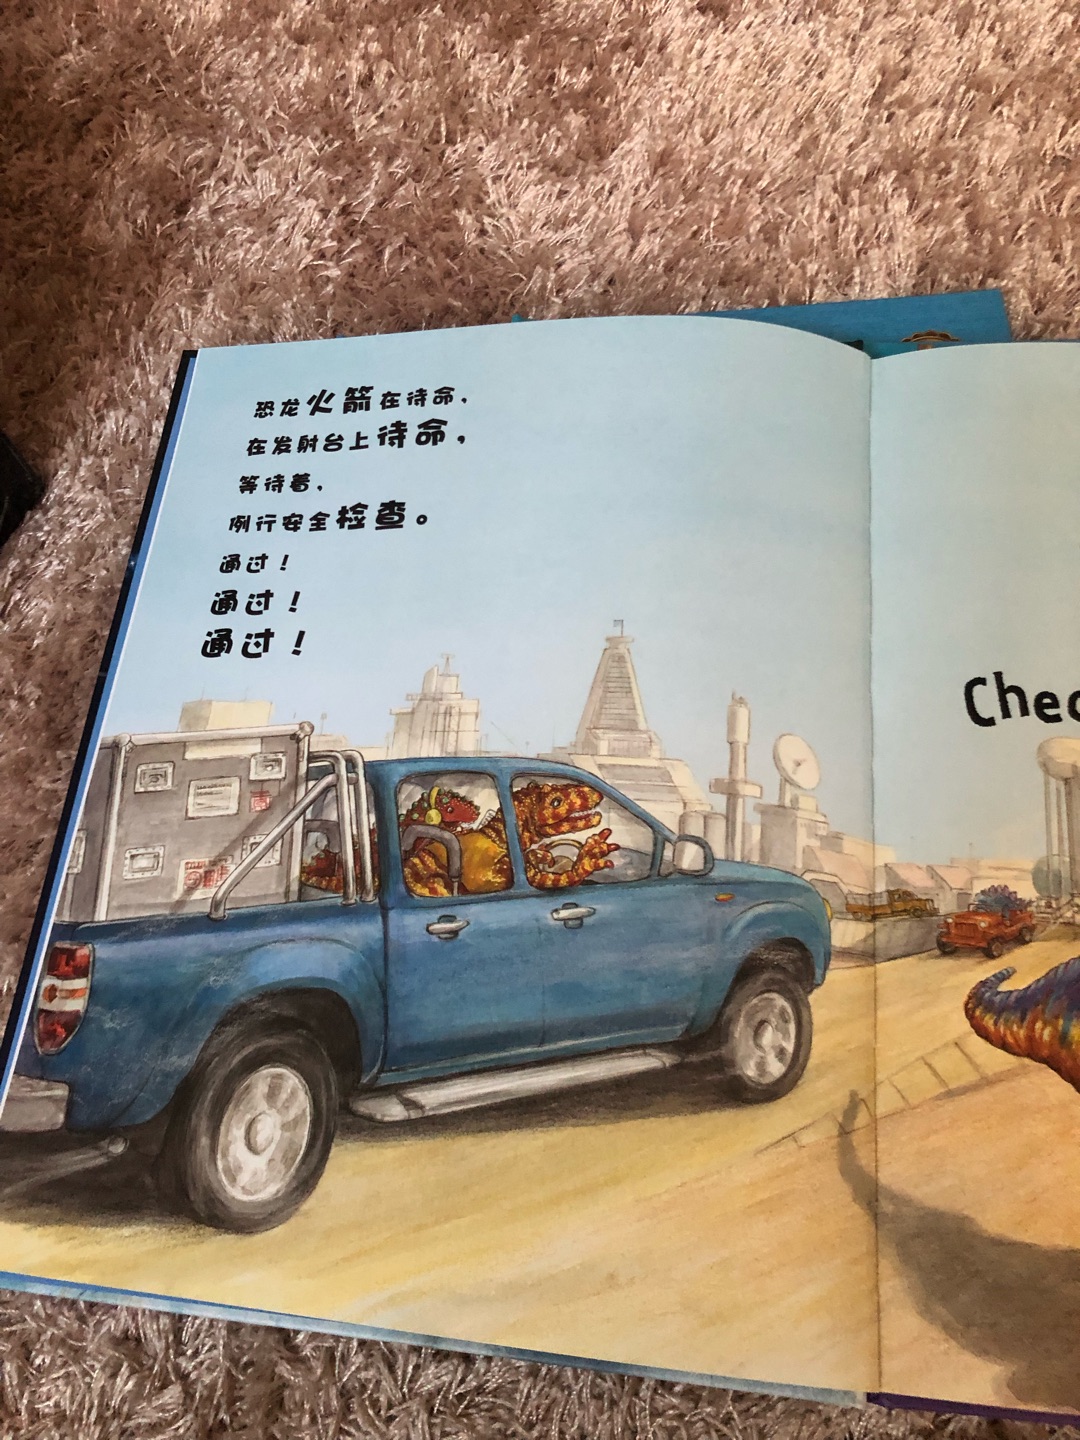 对于喜欢恐龙又喜欢的汽车的孩子来说绝对是宝藏书籍，语言生动简练，画面生动有趣，很棒的阅读体验